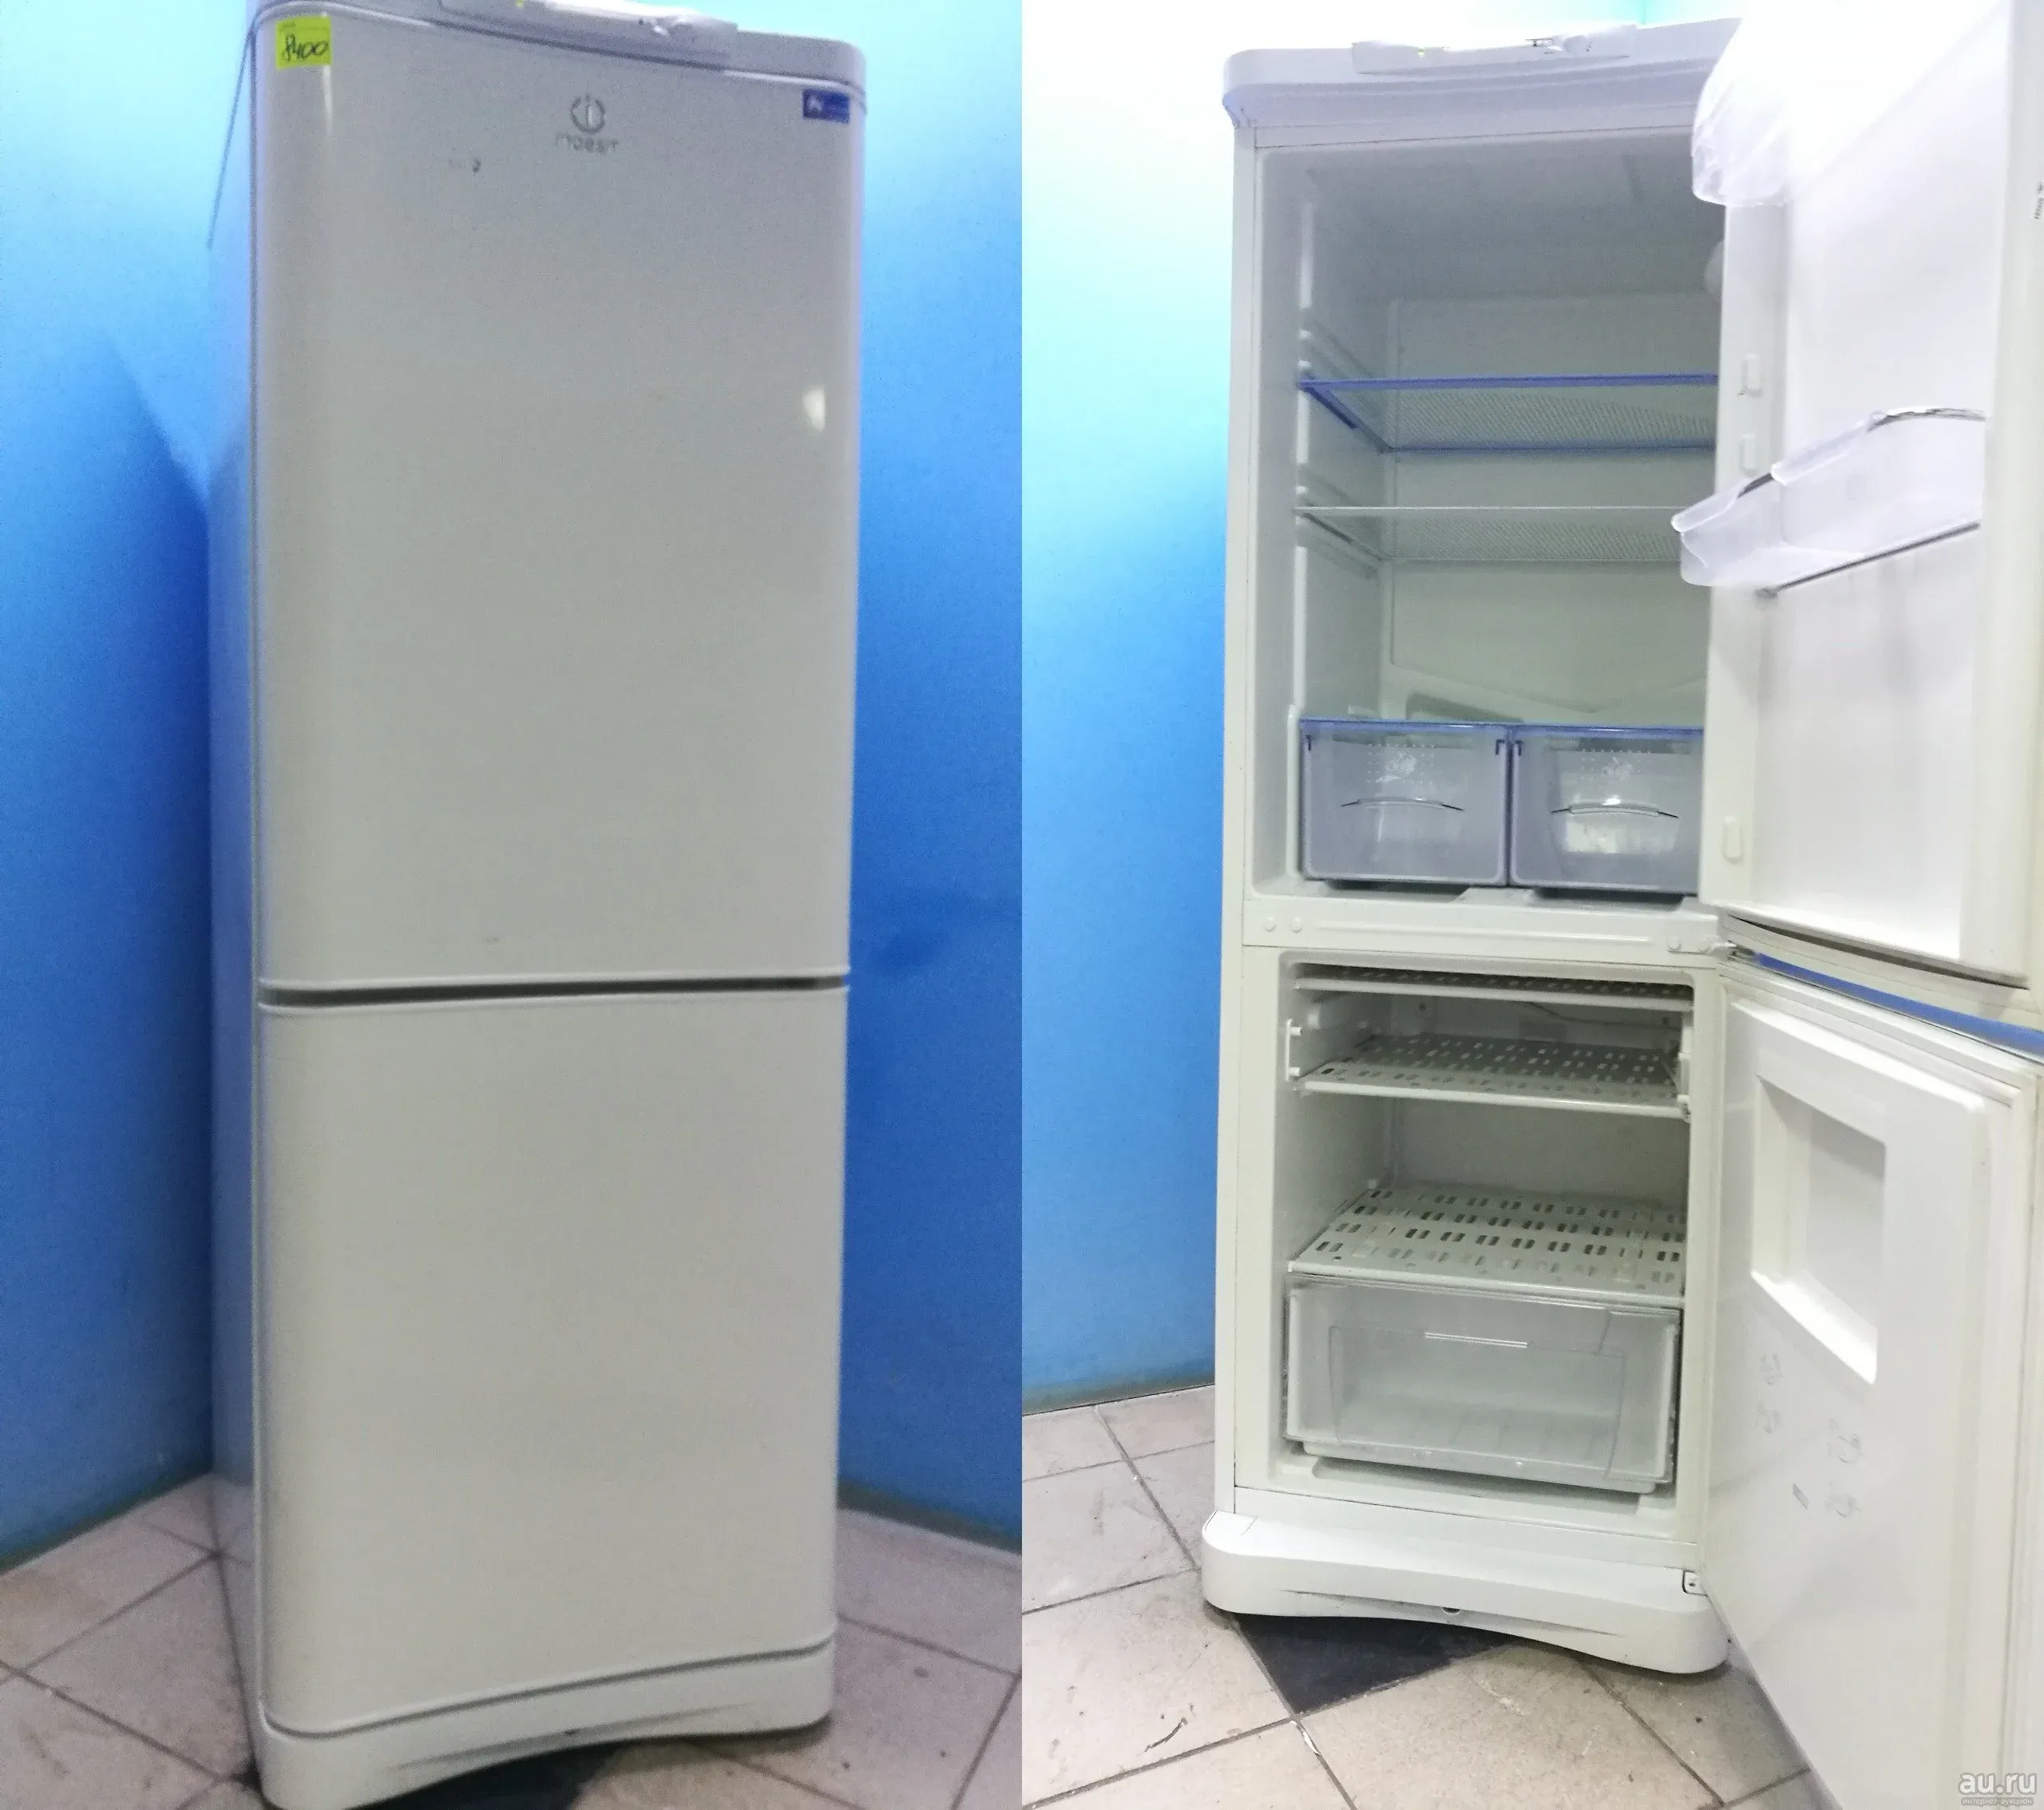 Старый холодильник индезит двухкамерный